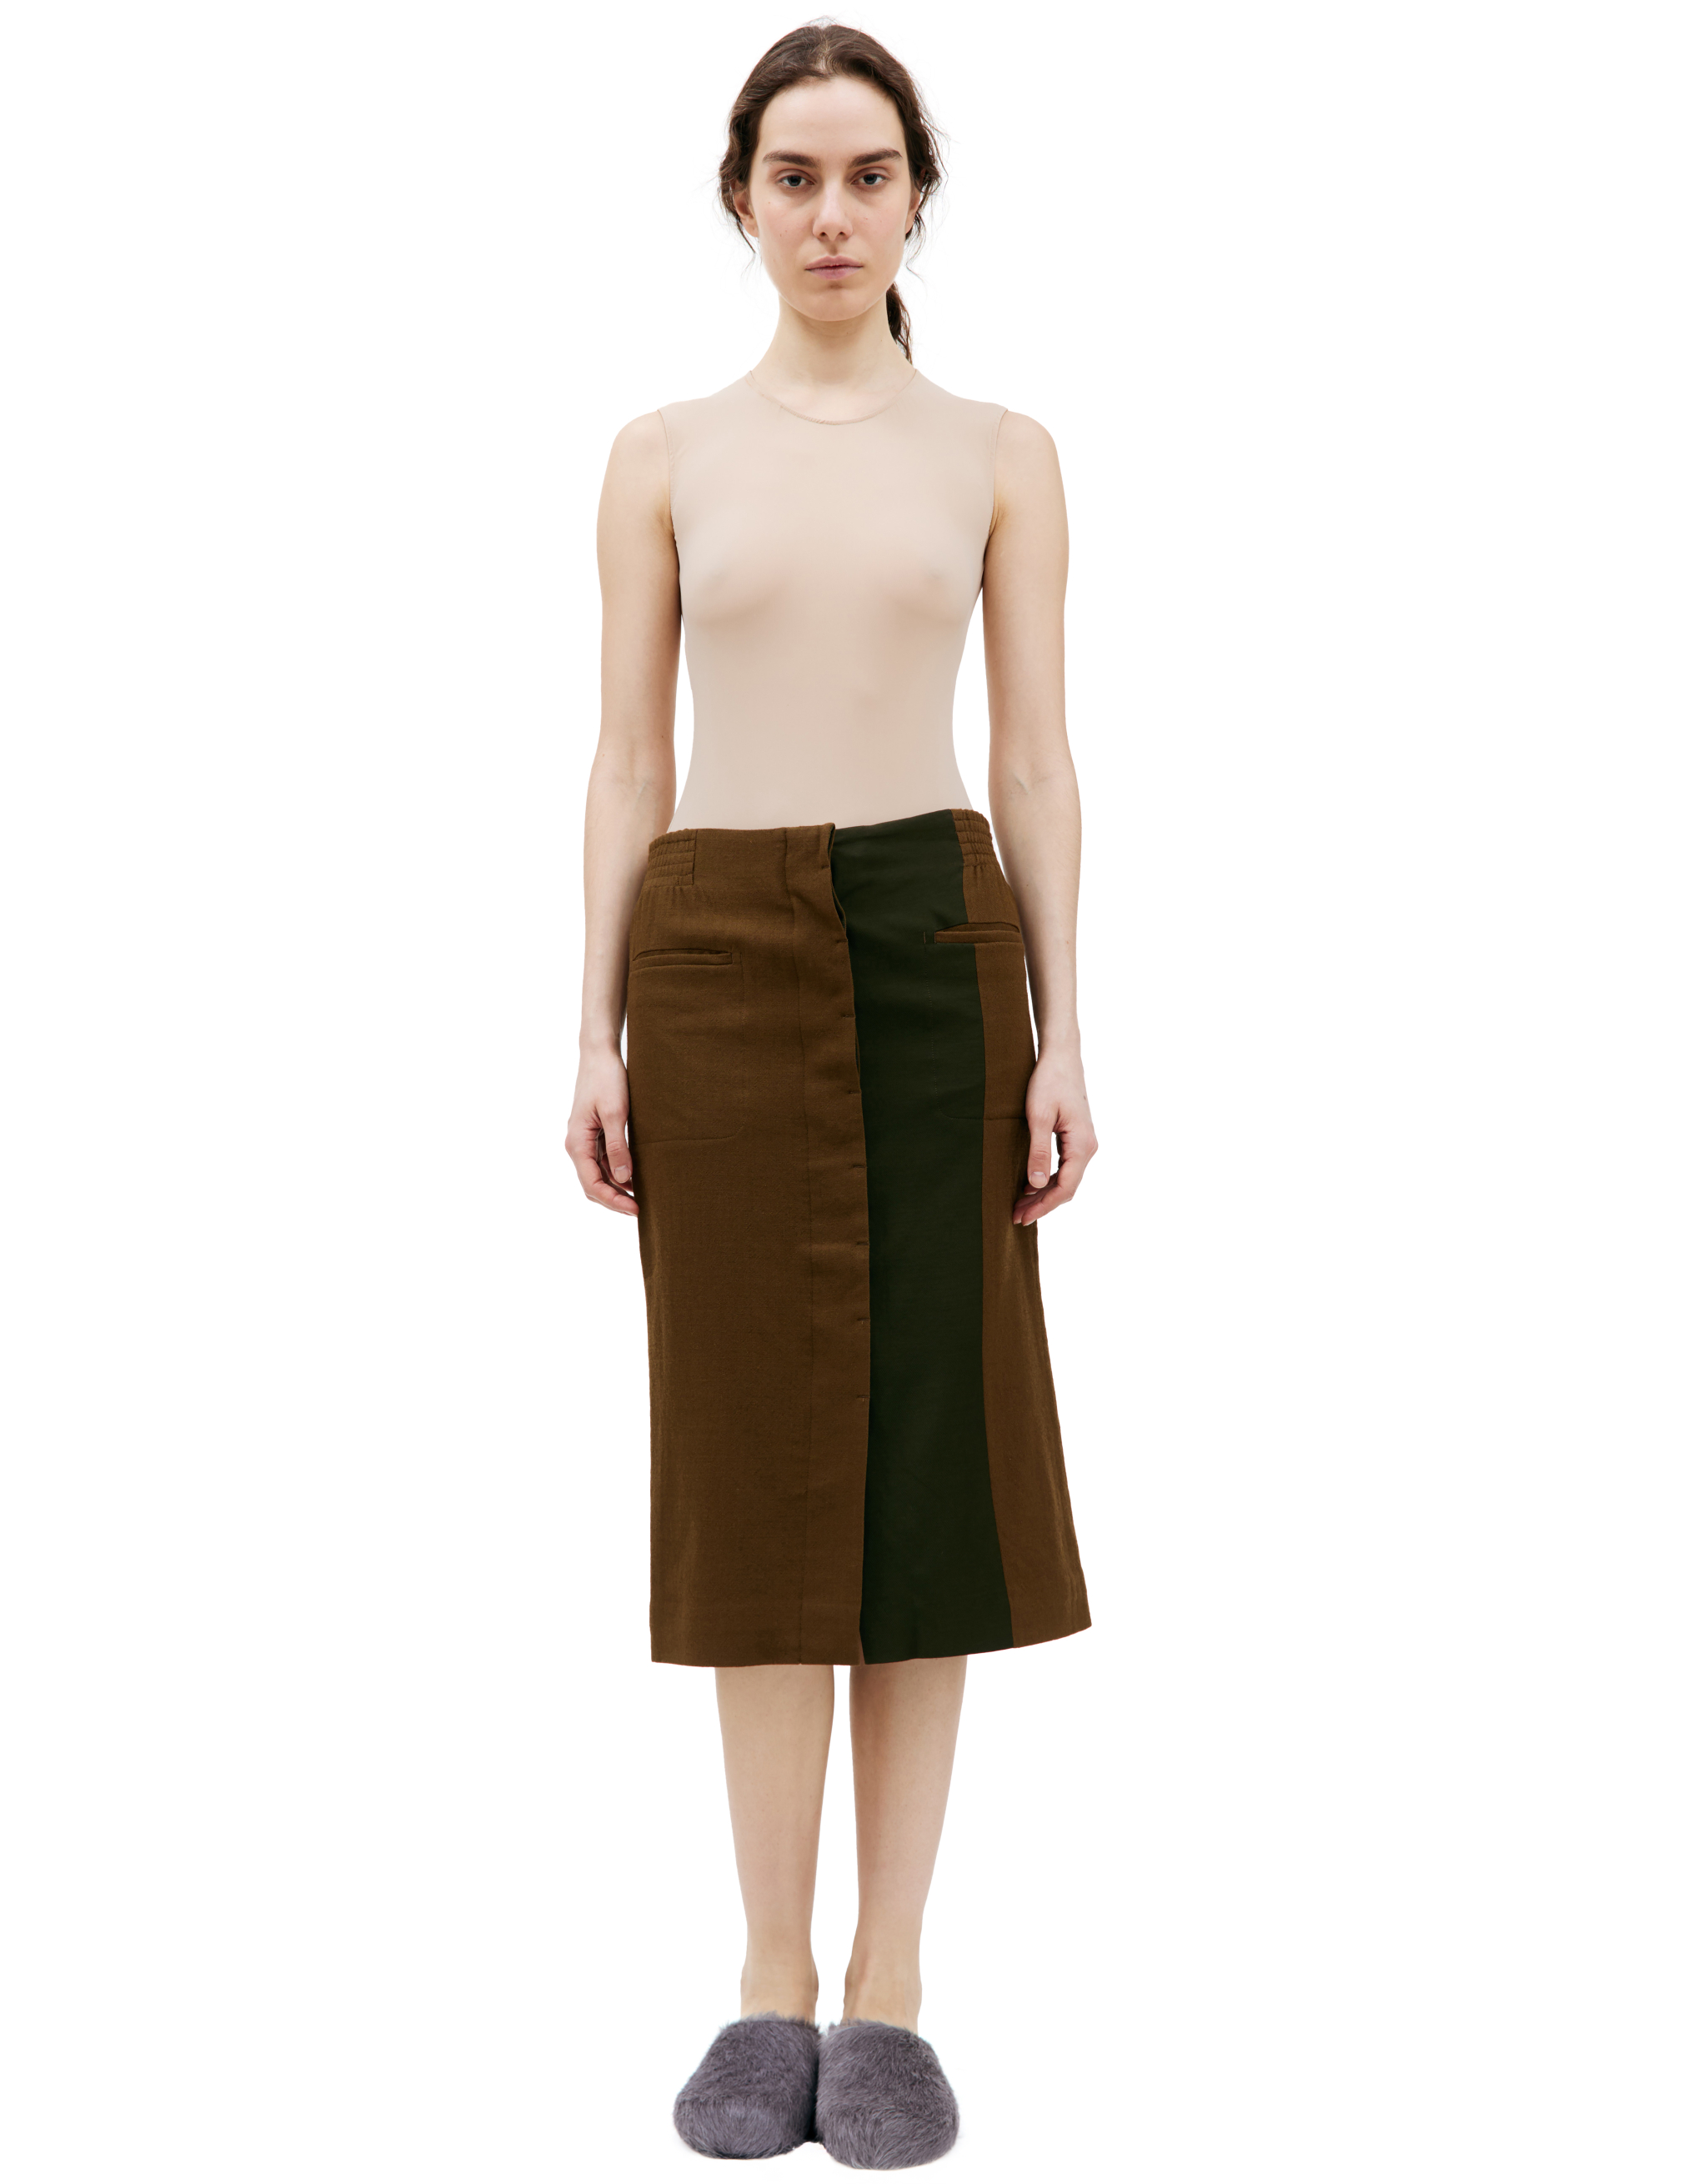 Шерстяная юбка цвета хаки Haider Ackermann 184-5600-435-035, размер sm